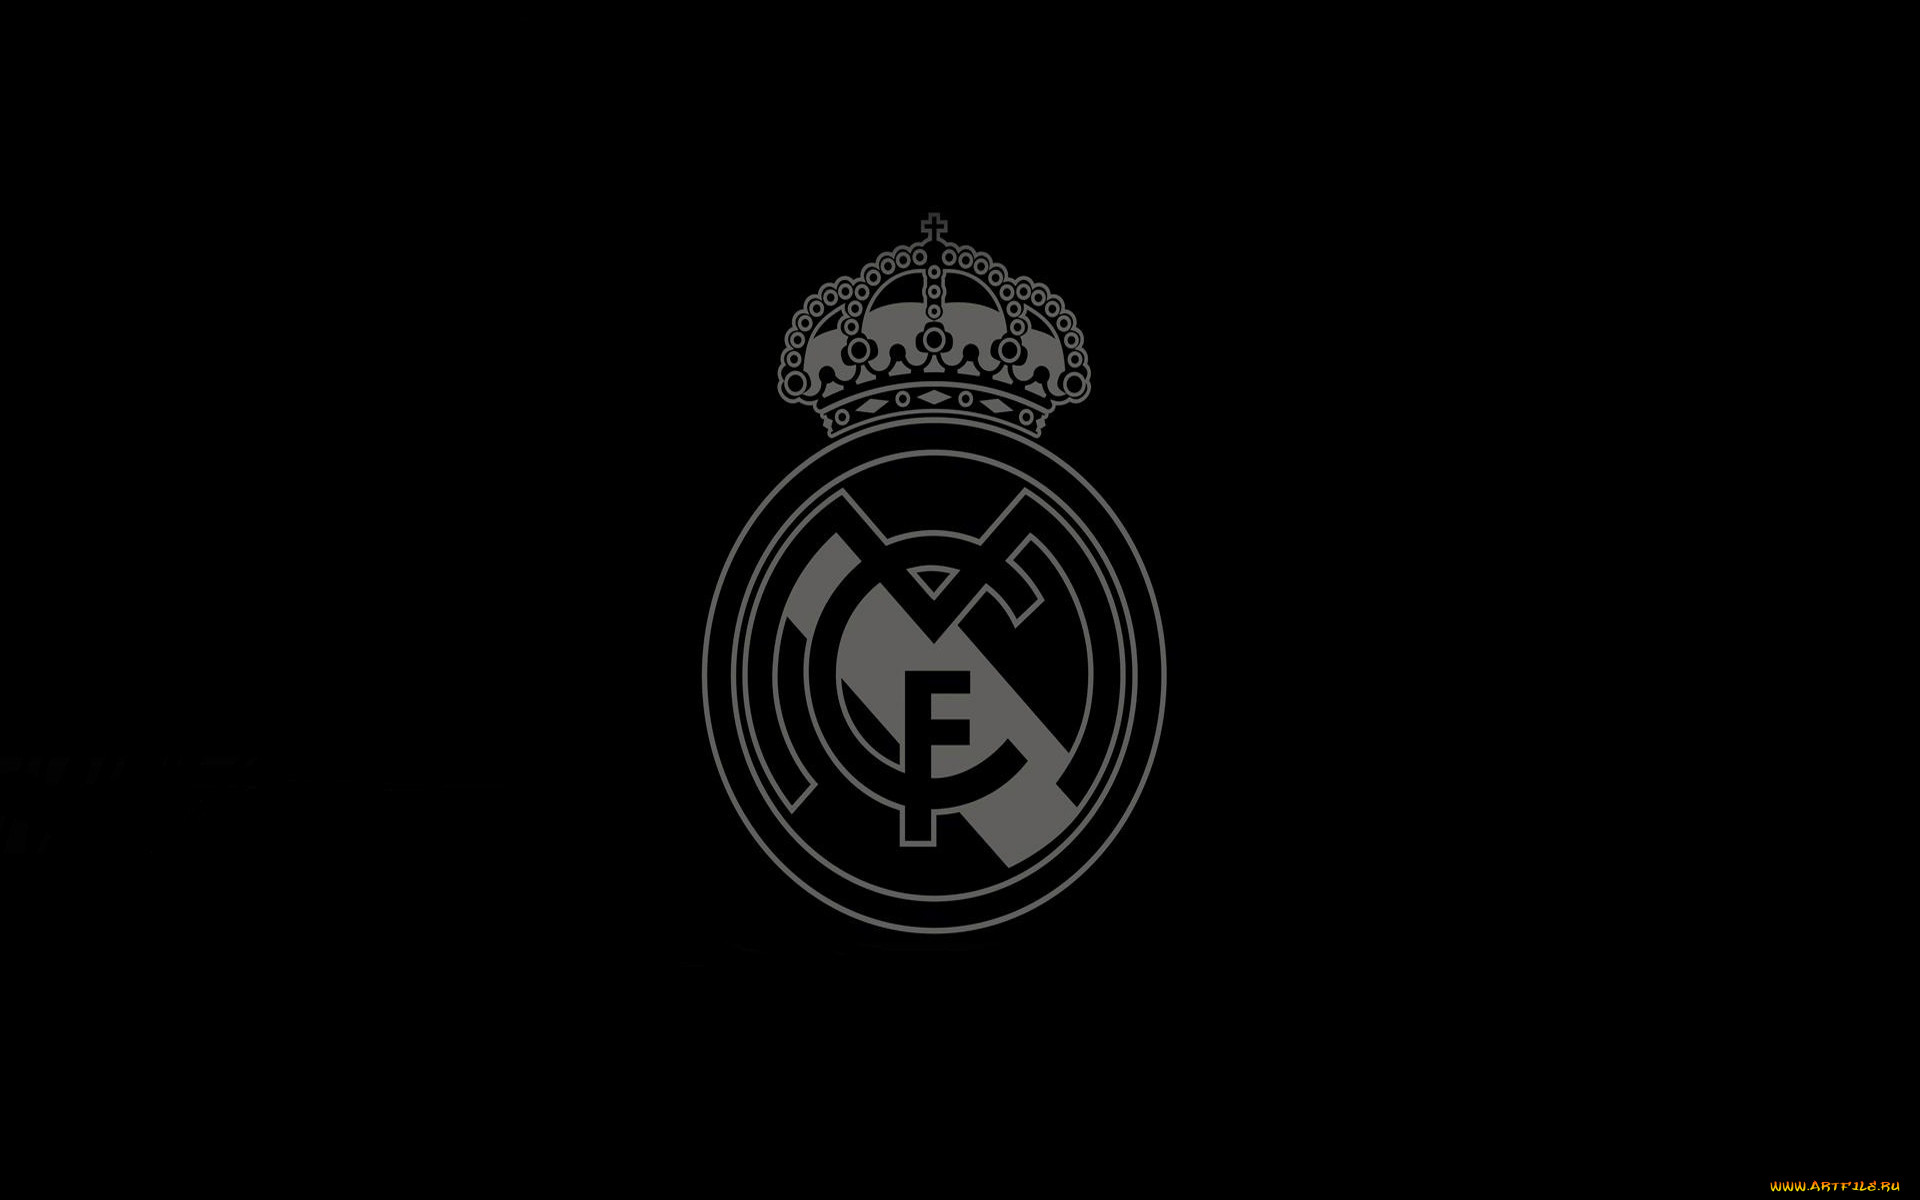 7 495 587 90 04. Реал Мадрид логотип черный. Реал Мадрид обои 1920х1080. Реал Мадрид лого на чёрном фонн. Реал Мадрид обои черные.